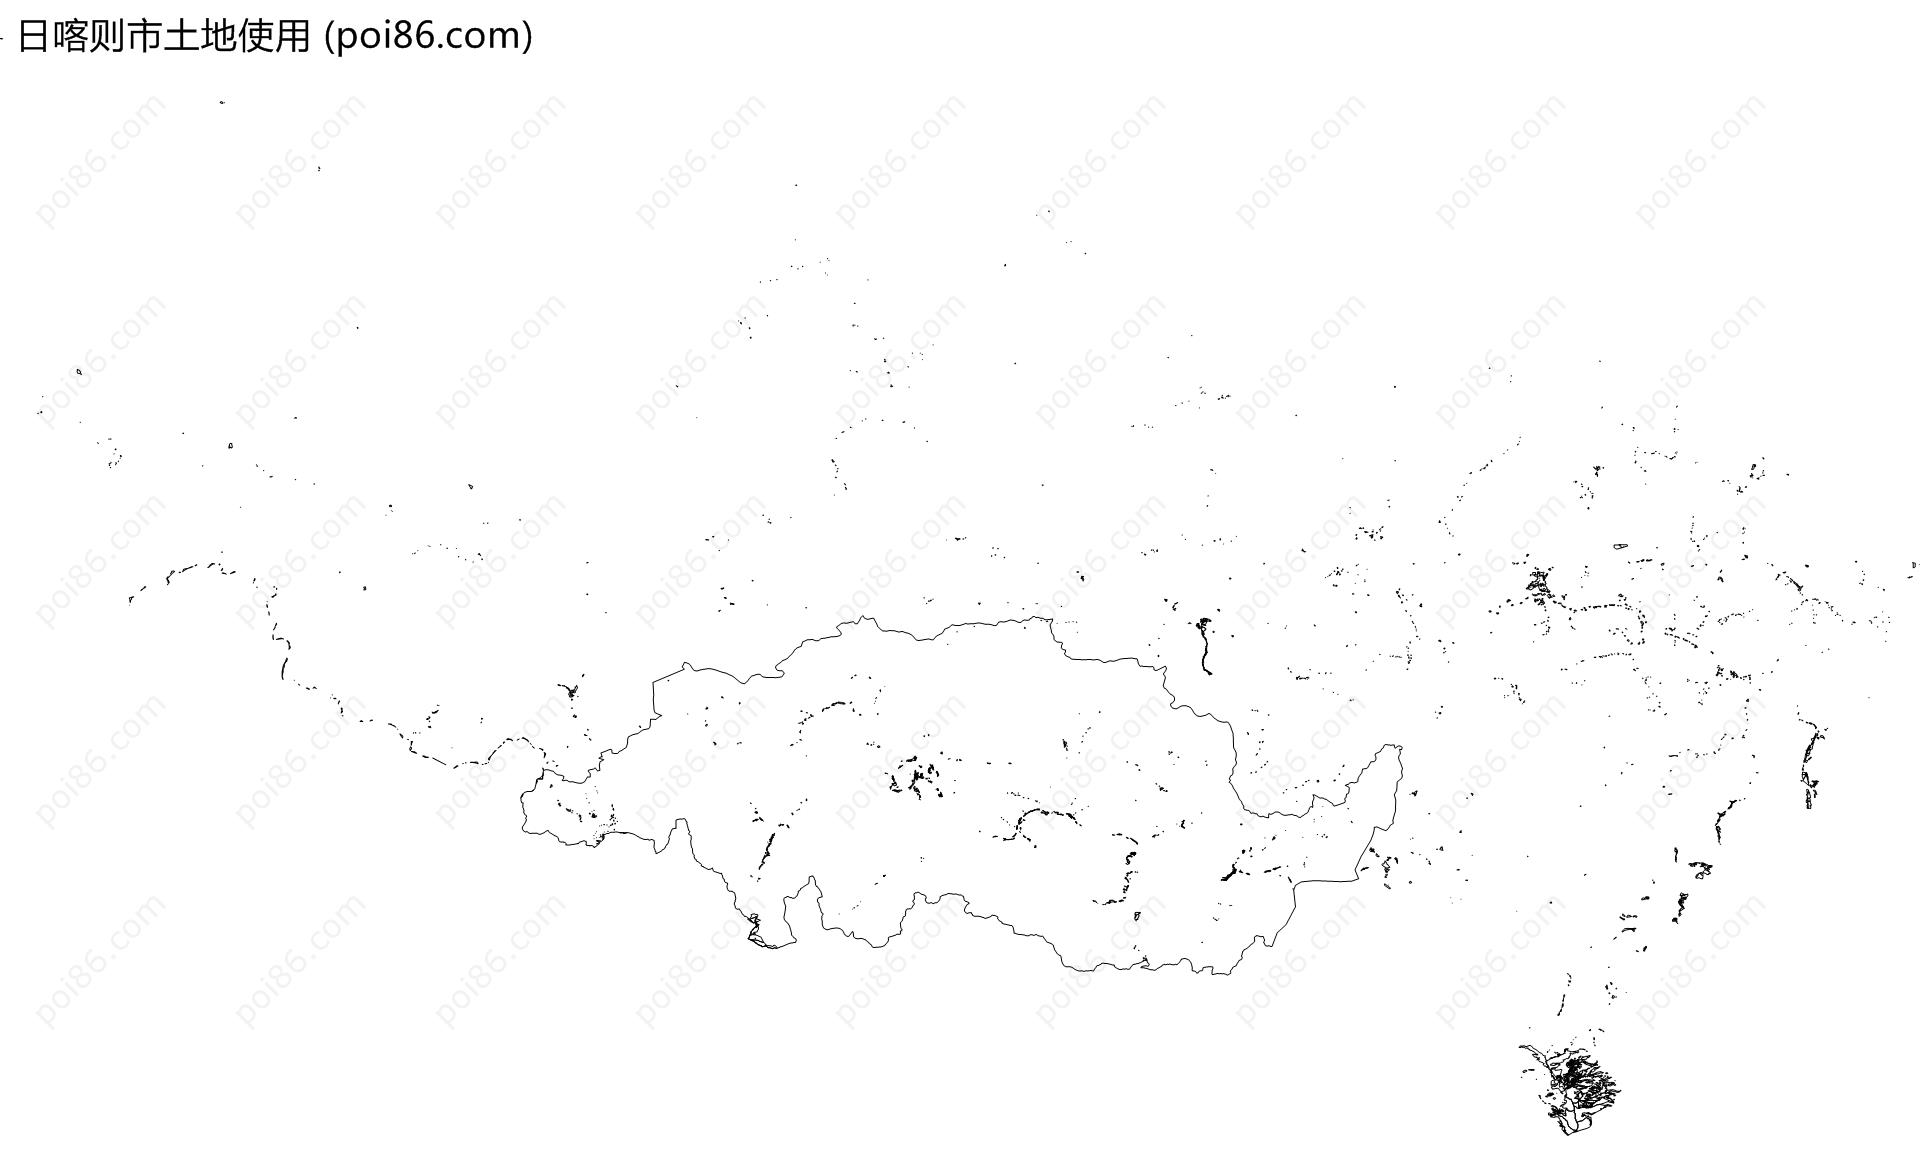 日喀则市土地使用地图